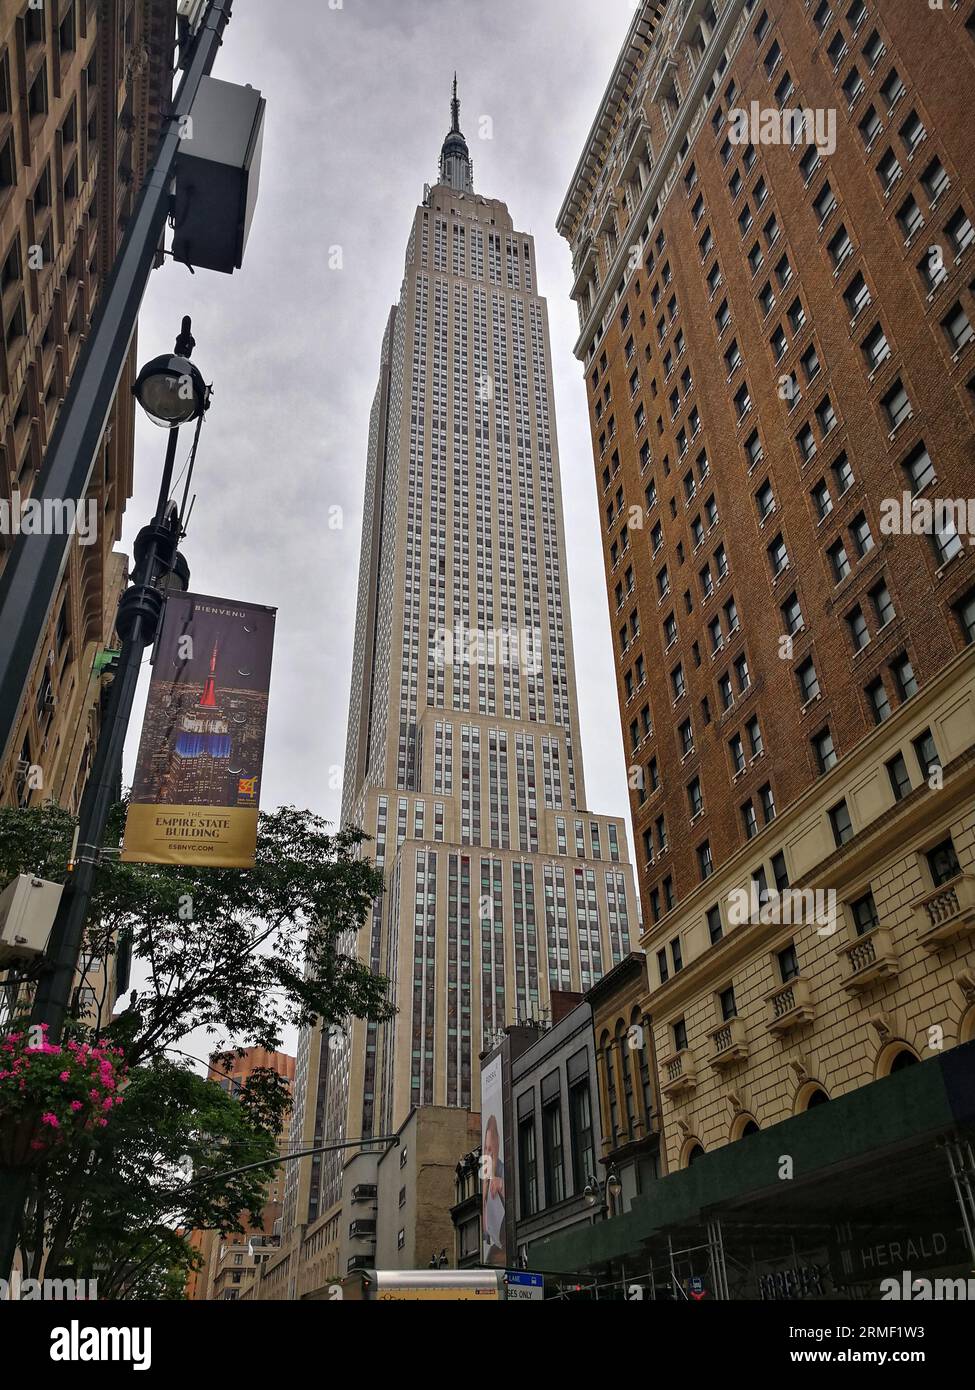 Esta foto muestra una vista del Empire State Building desde la calle en la ciudad de Nueva York. El edificio es alto e imponente, y domina el horizonte. Foto de stock